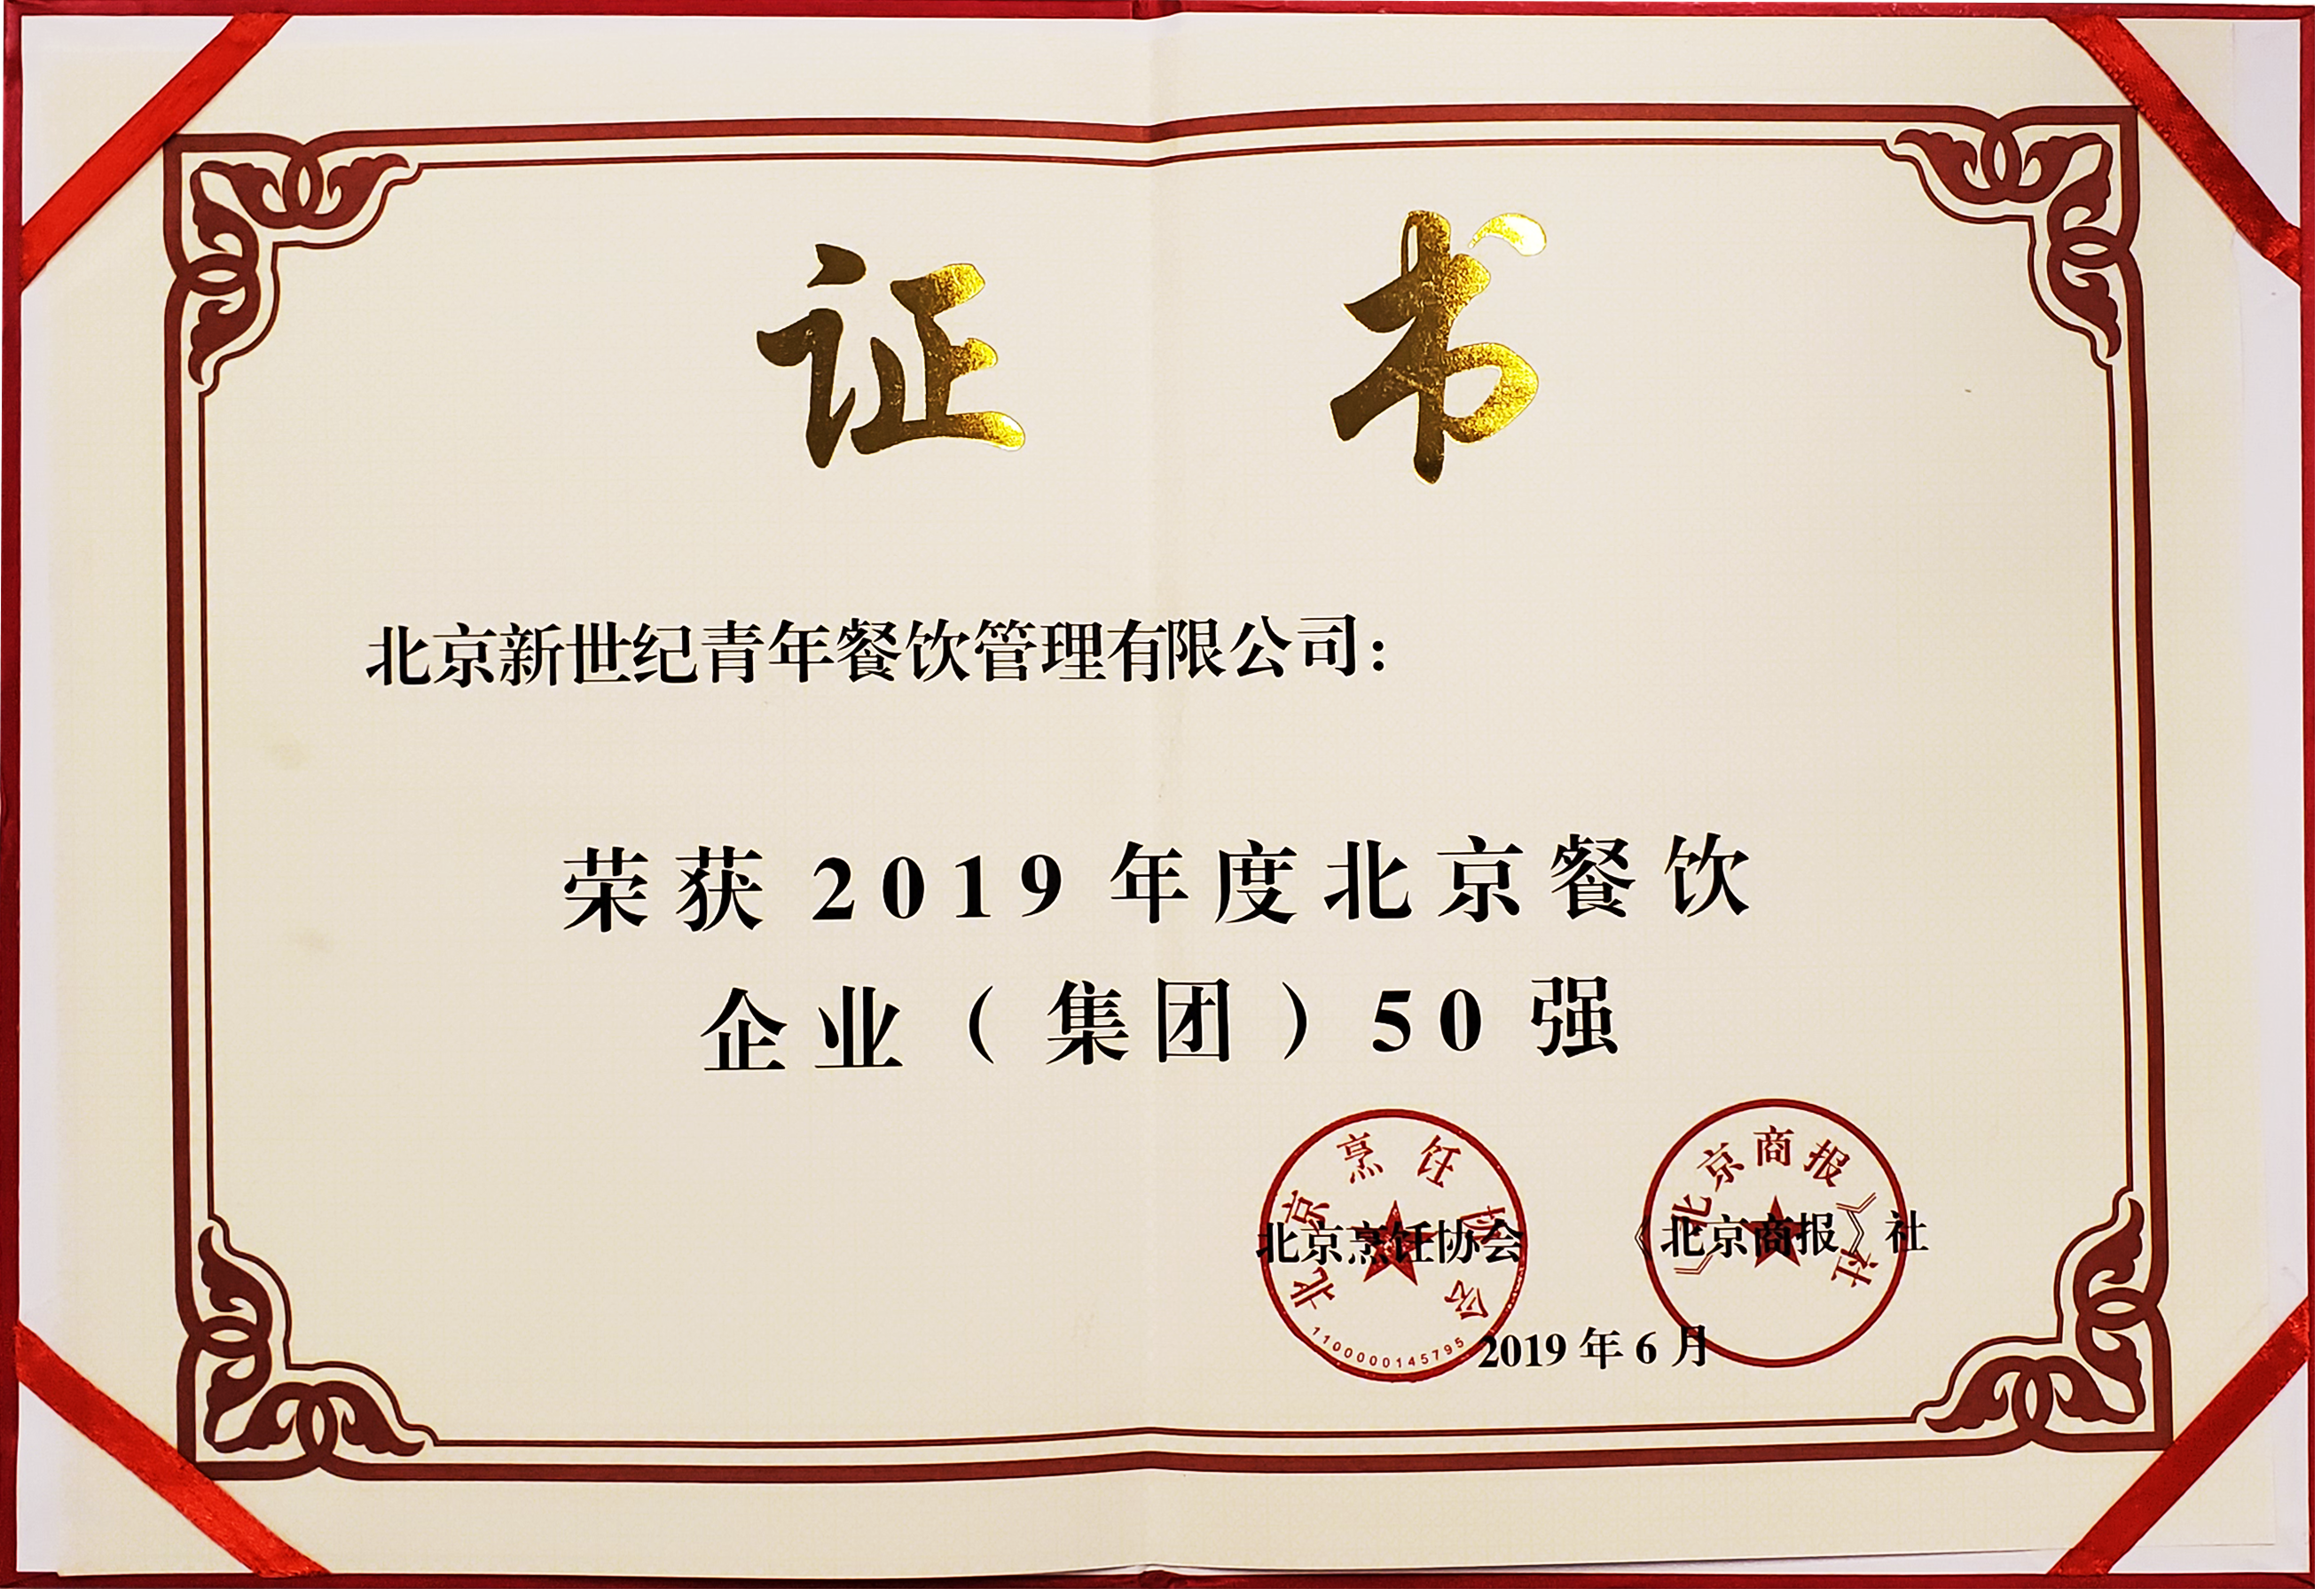 2019年度北京餐饮企业集团50强